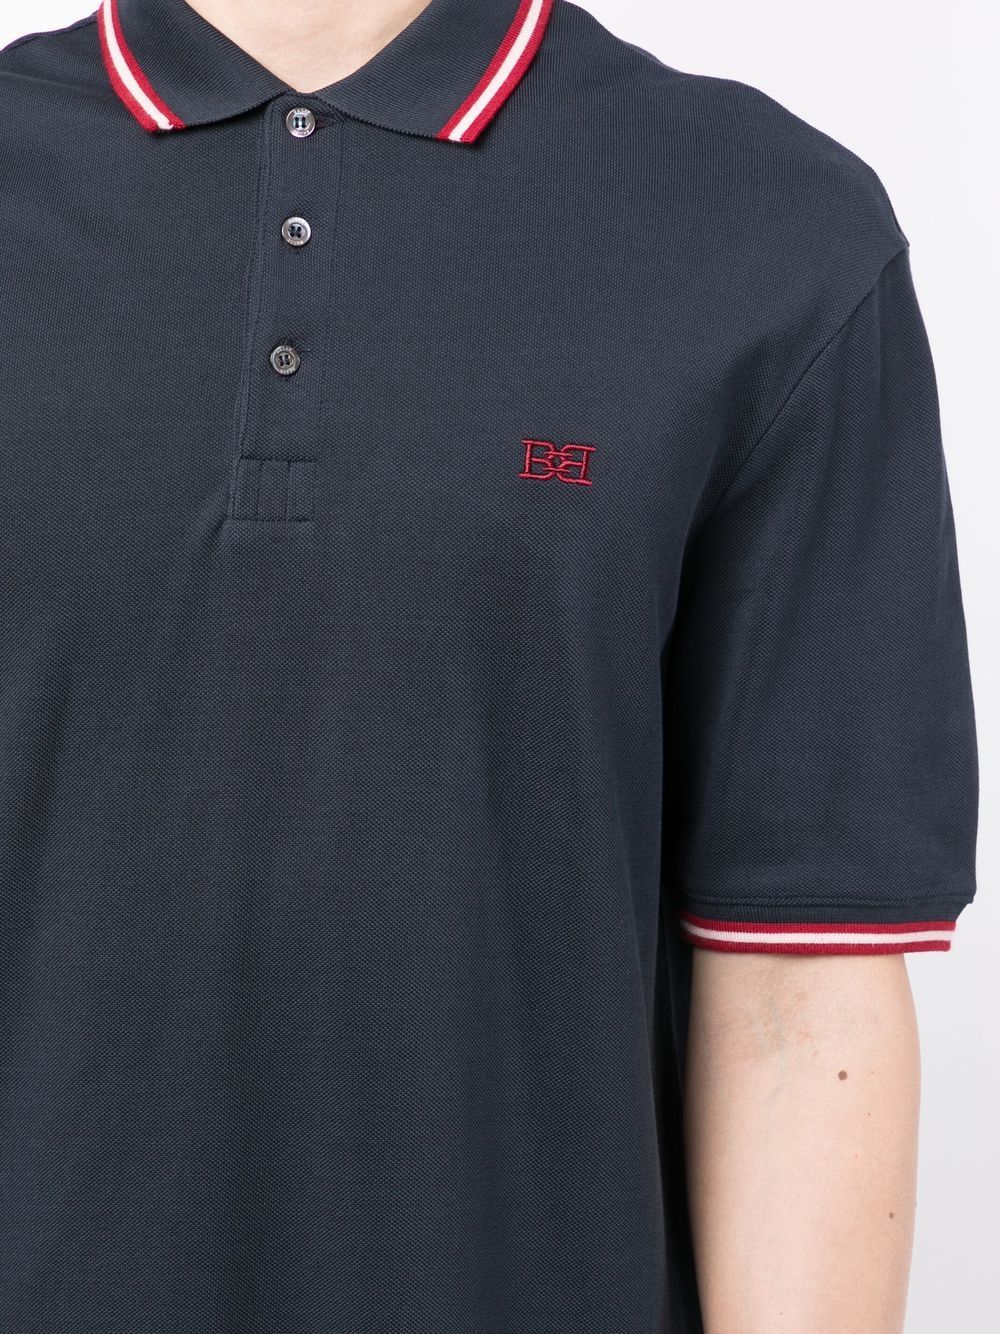 Bally Men's Embroidered Logo Polo Shirt